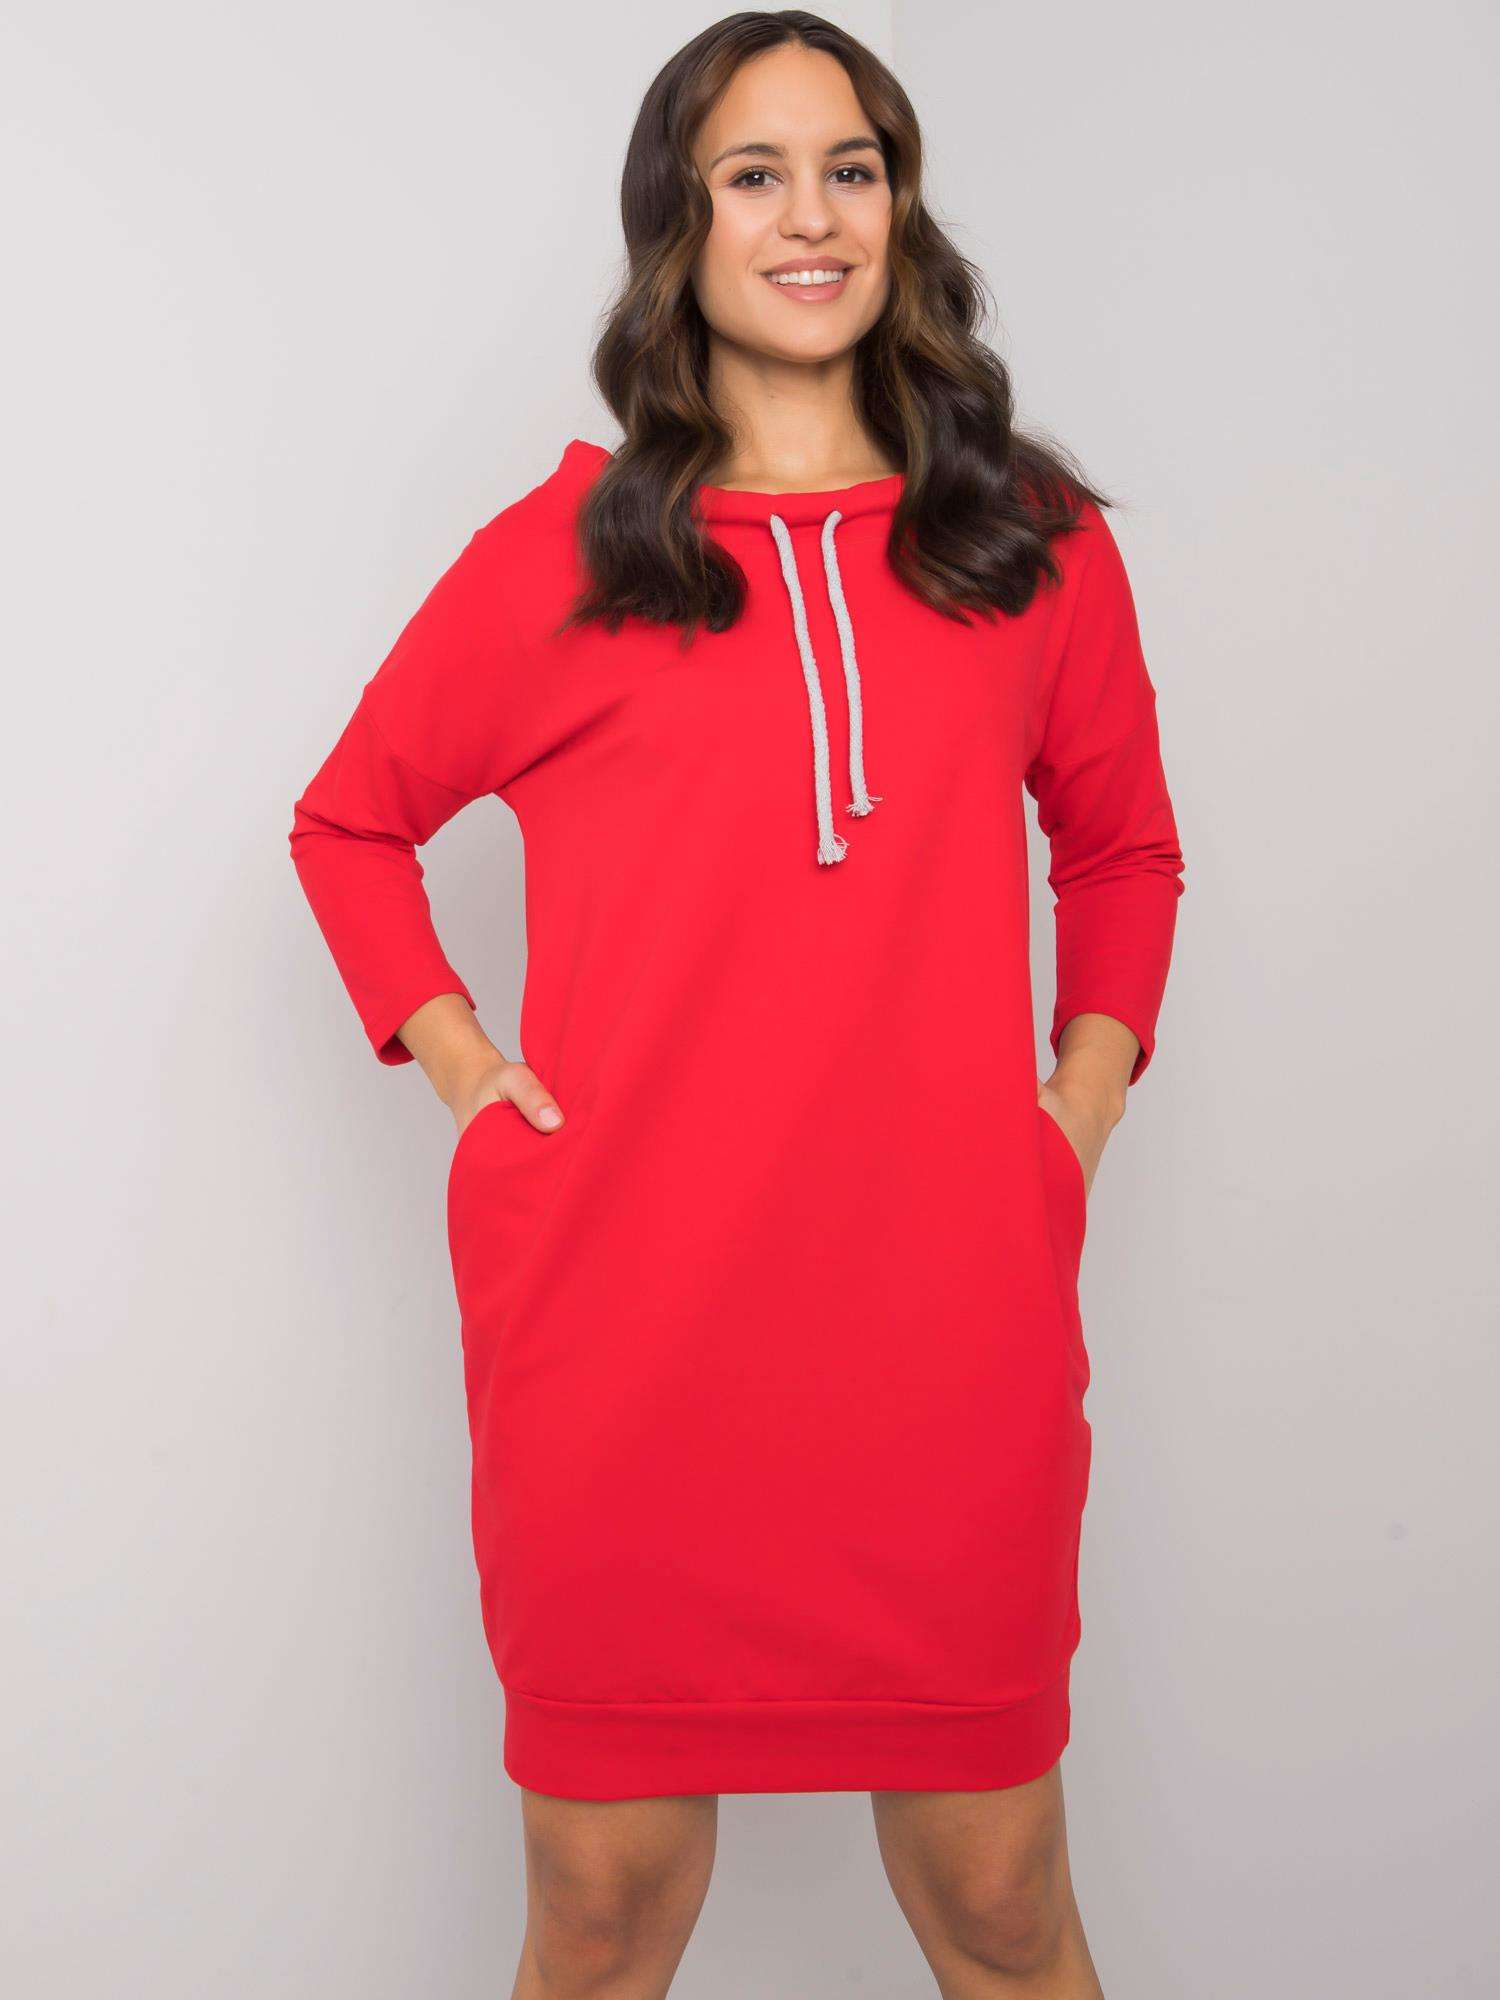 Červené dámské mikinové šaty s kapsami RV-SK-4597-1.97-red Velikost: L/XL